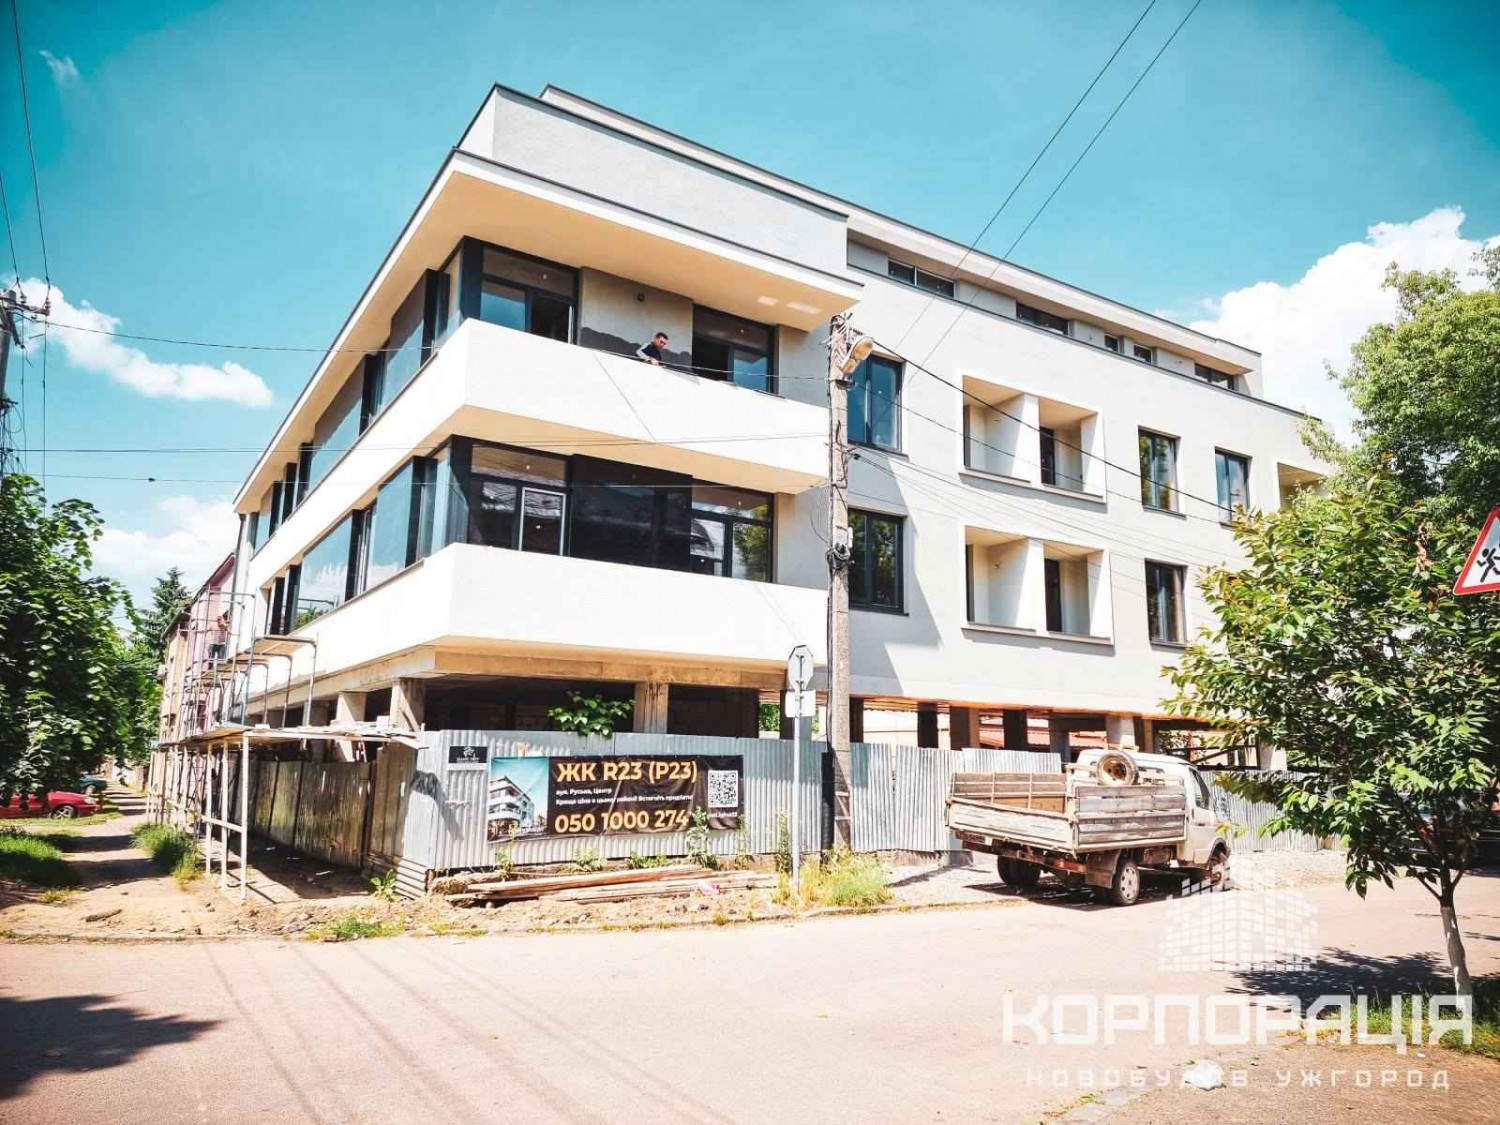 Продаж останніх трьох квартир у новобудові в центрі міста Ужгорода ЖК "R23"